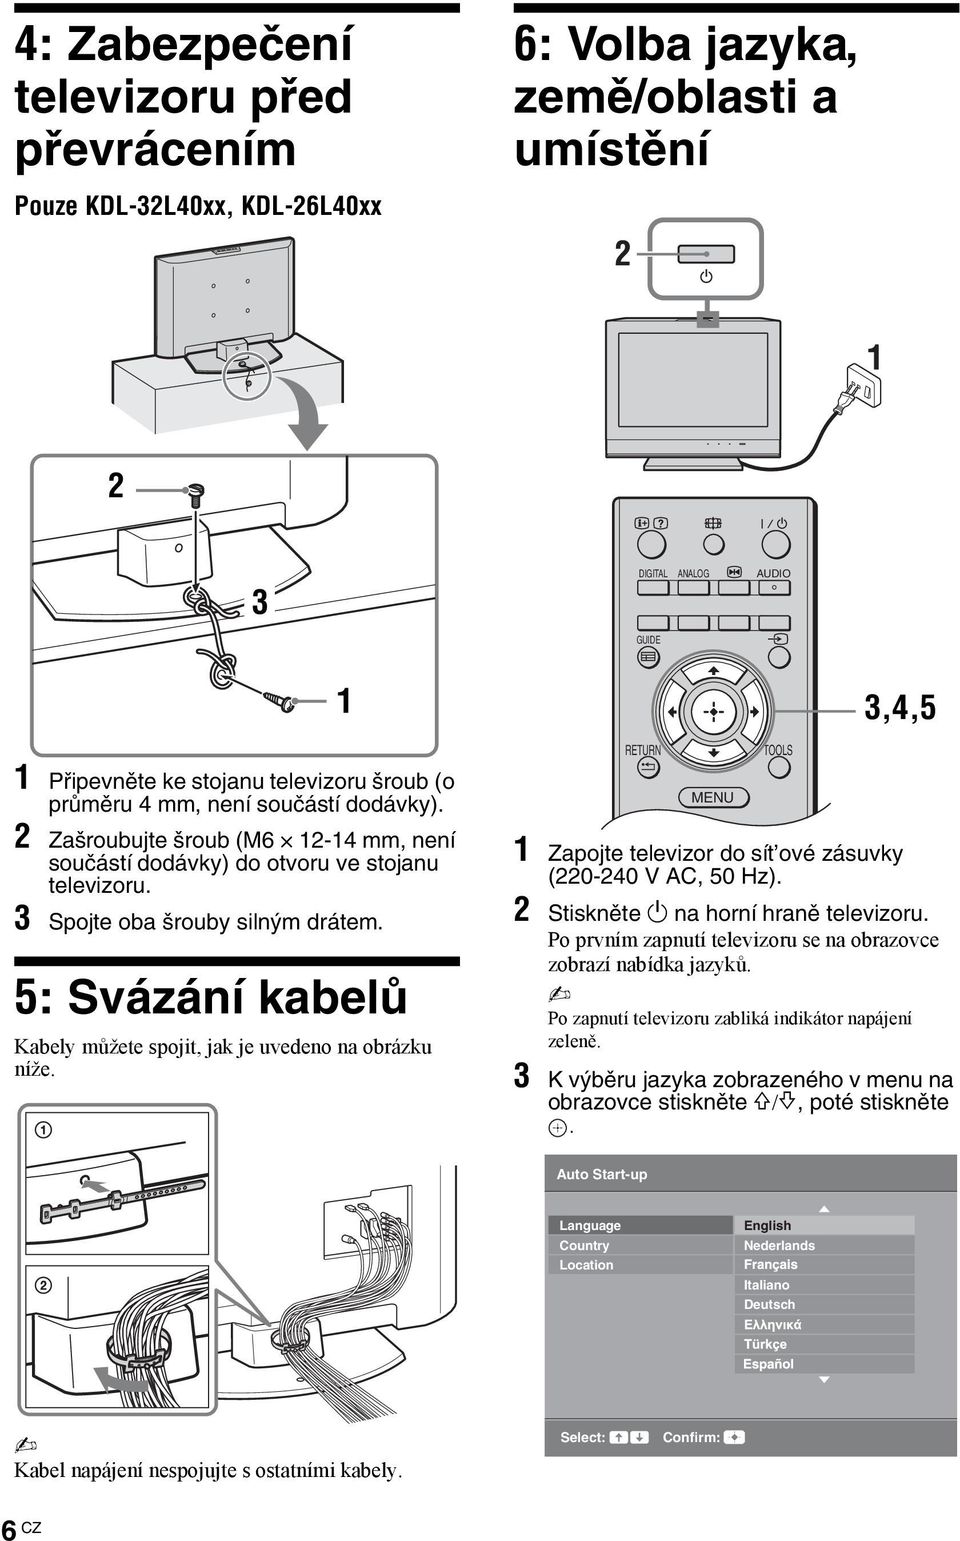 5: Svázání kabelů Kabely můžete spojit, jak je uvedeno na obrázku níže. 1 RETURN MENU TOOLS 3,4,5 1 Zapojte televizor do sít ové zásuvky (220-240 V AC, 50 Hz). 2 Stiskněte 1 na horní hraně televizoru.